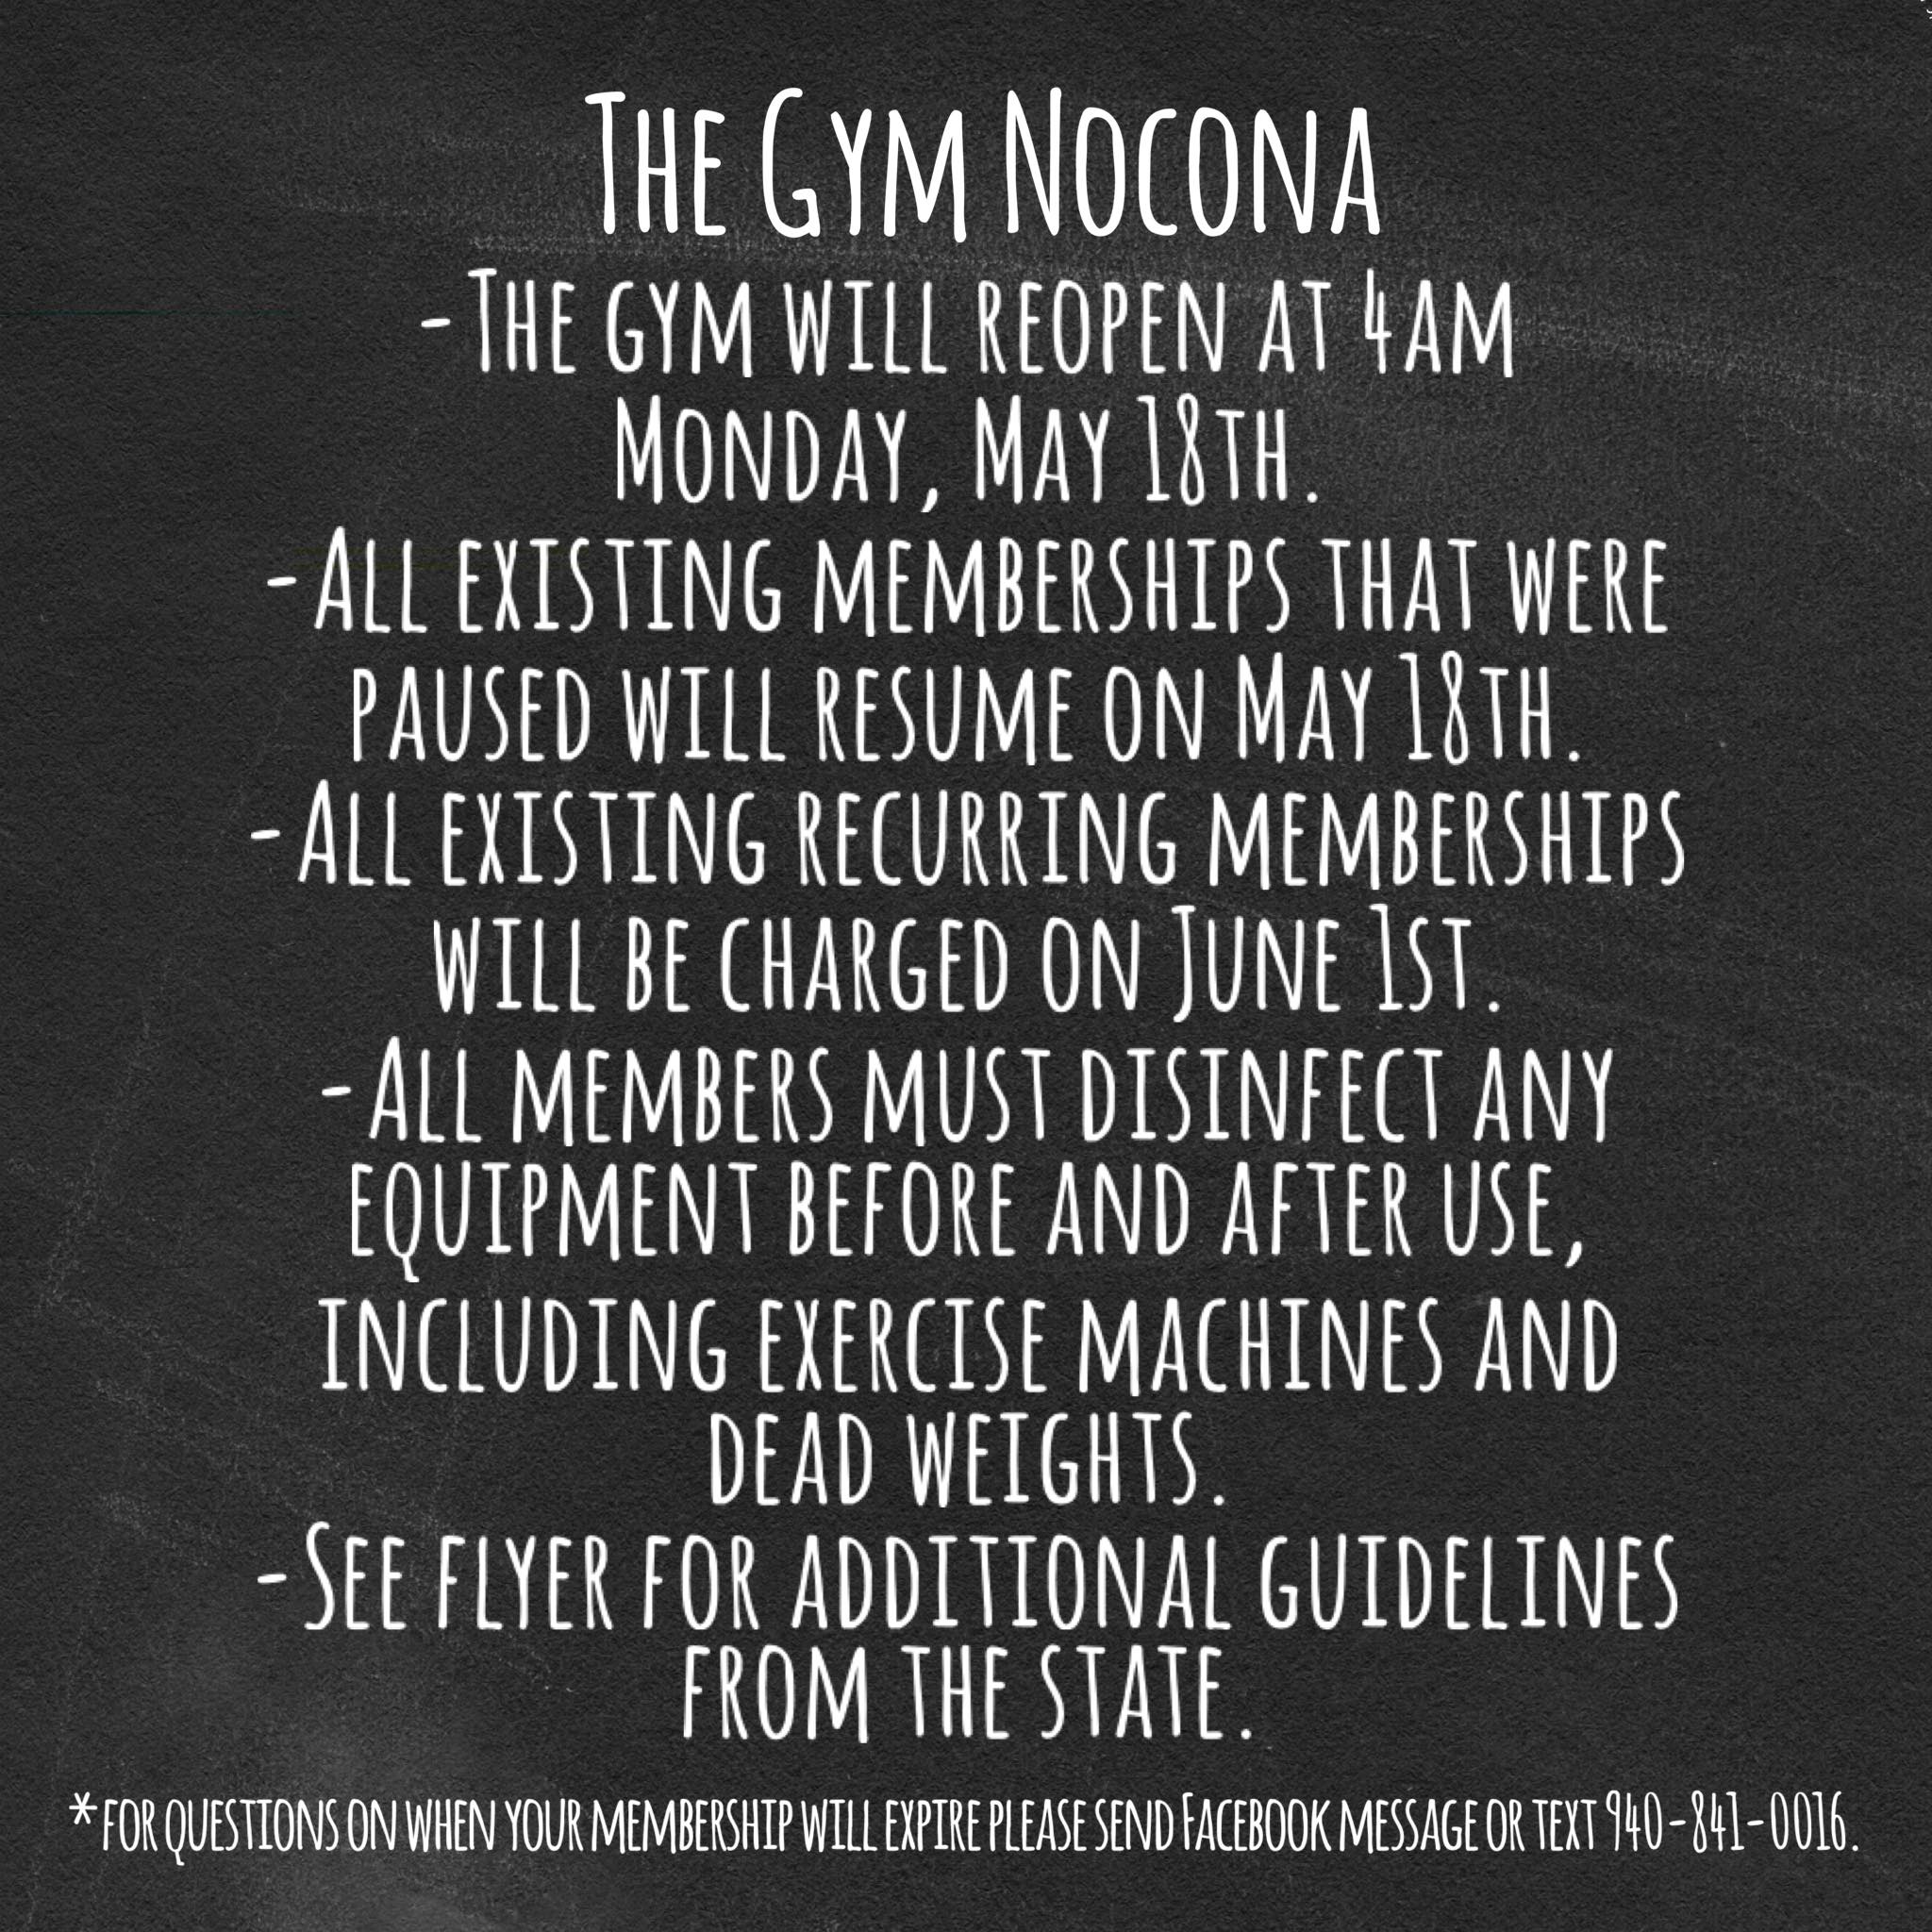 The Gym Nocona 710 W Pine St, Nocona Texas 76255